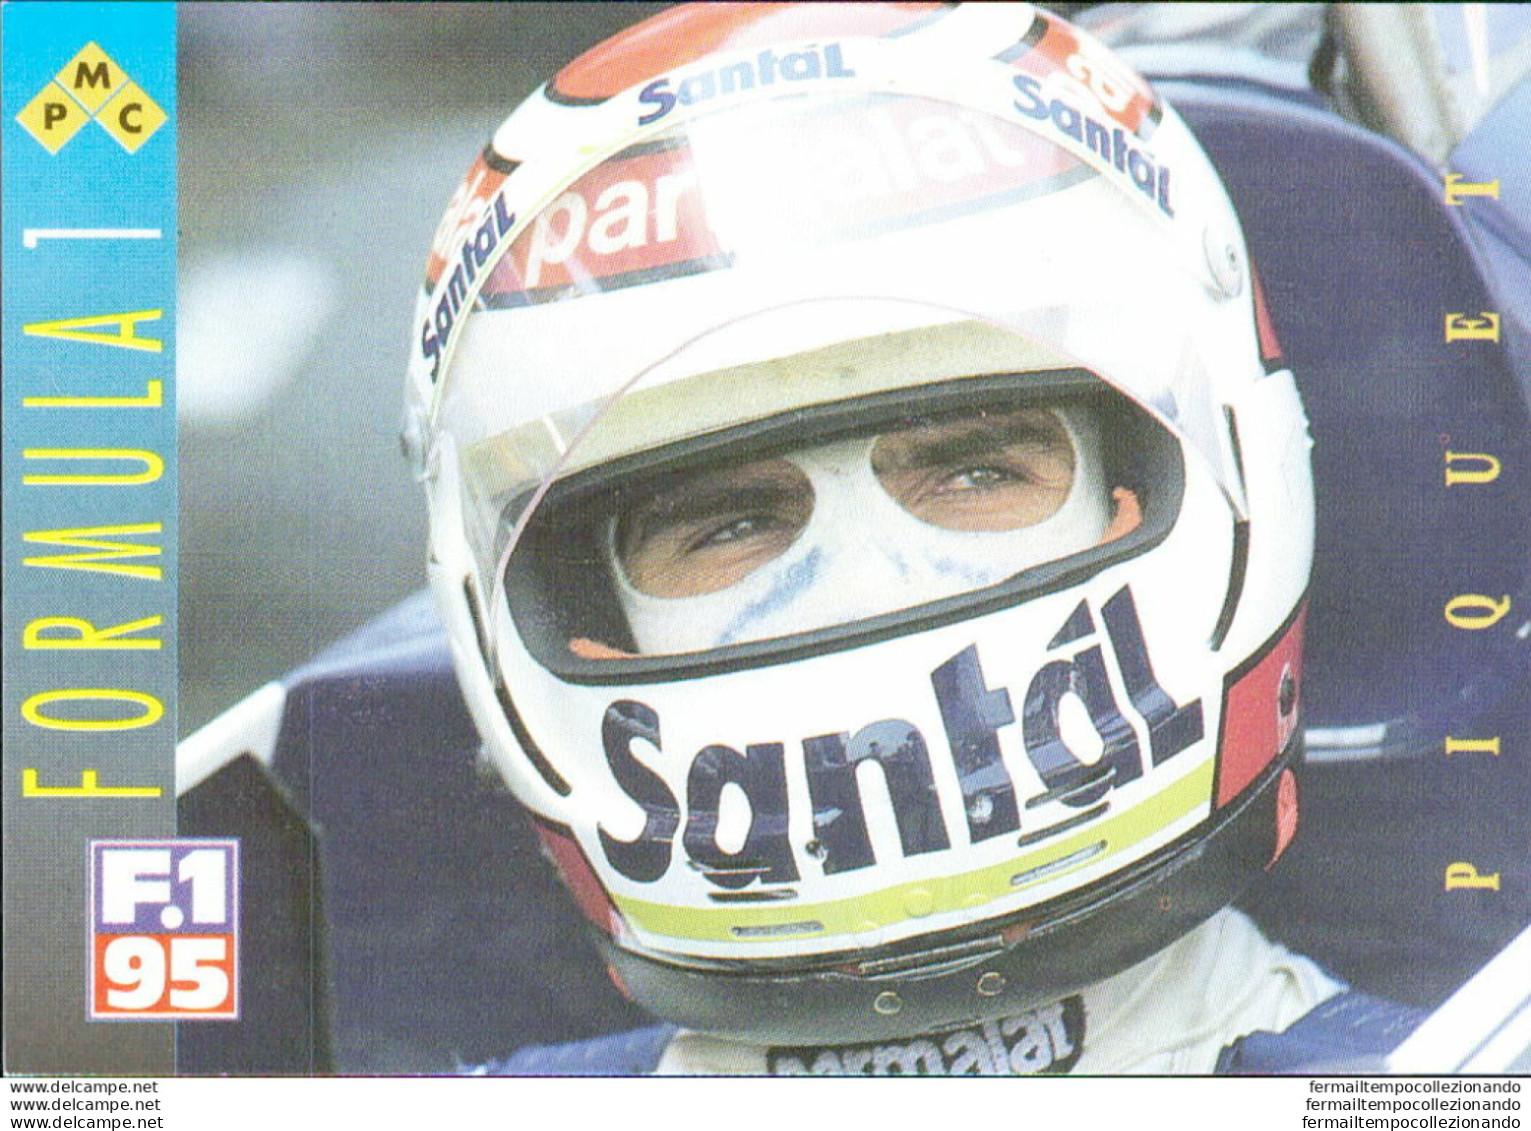 Bh32 1995 Formula 1 Gran Prix Collection Card Piquet N 32 - Catalogus